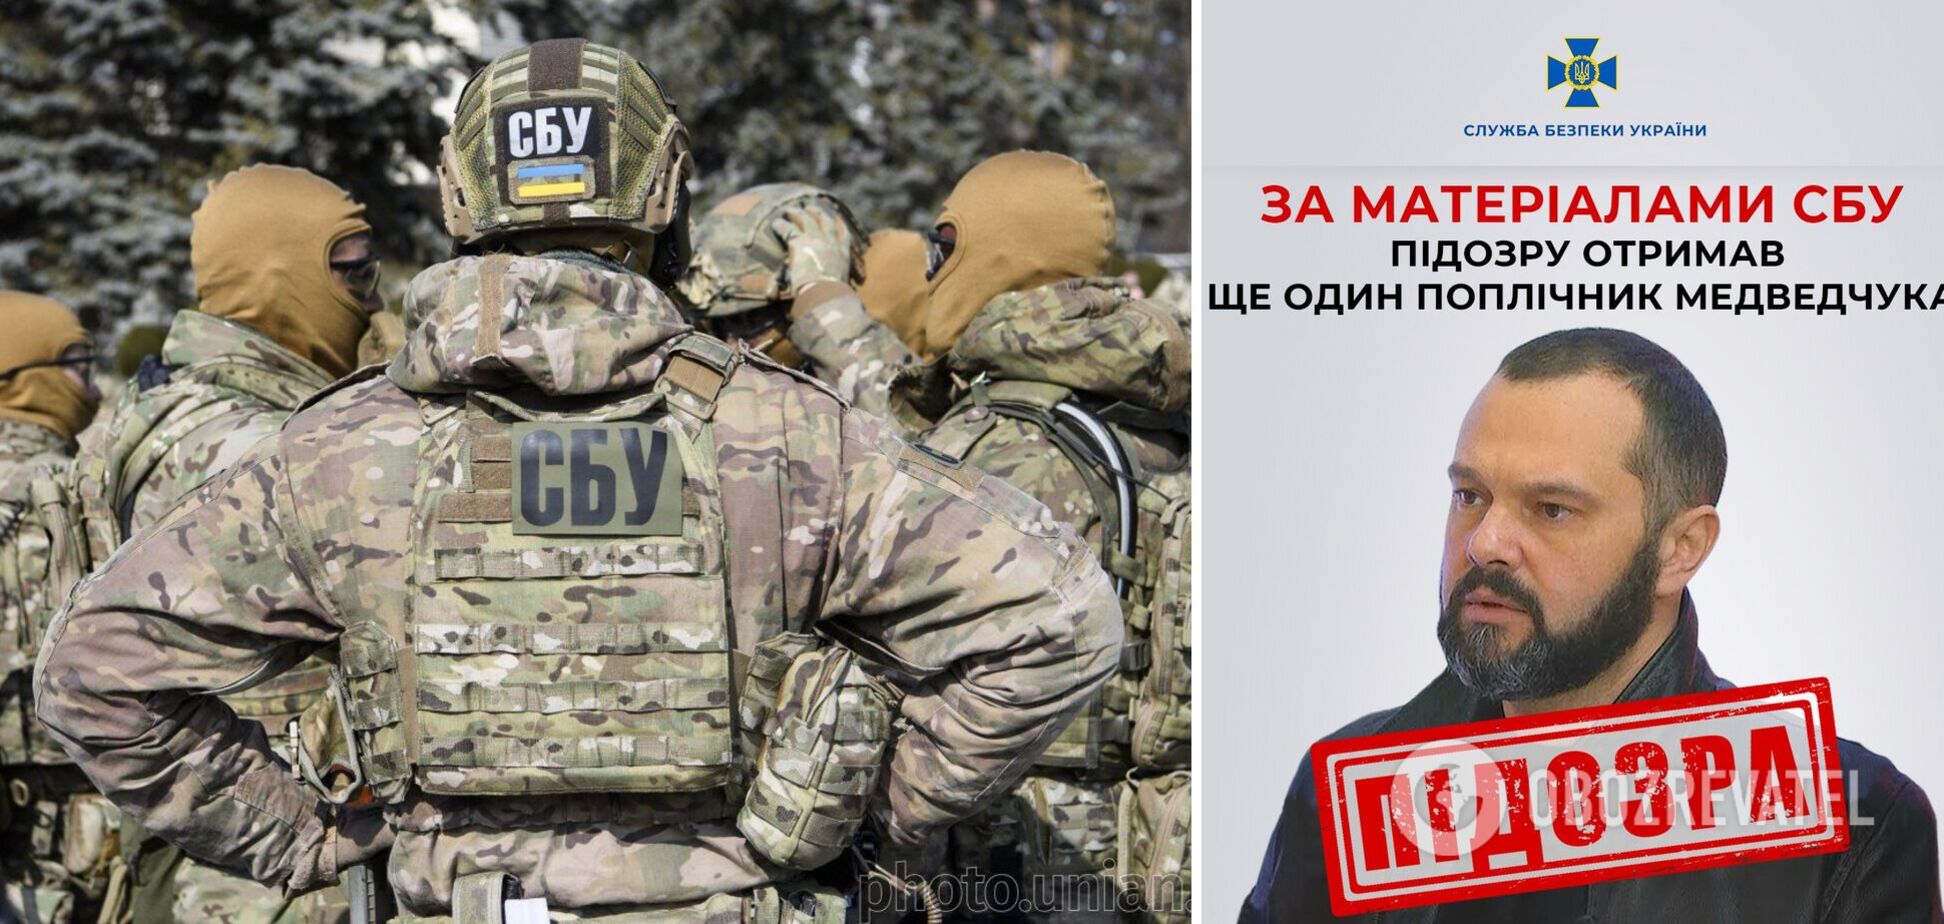 СБУ повідомила про підозру поплічнику Медведчука: працював на телеканалах кума Путіна й очолював заборонену партію. Фото